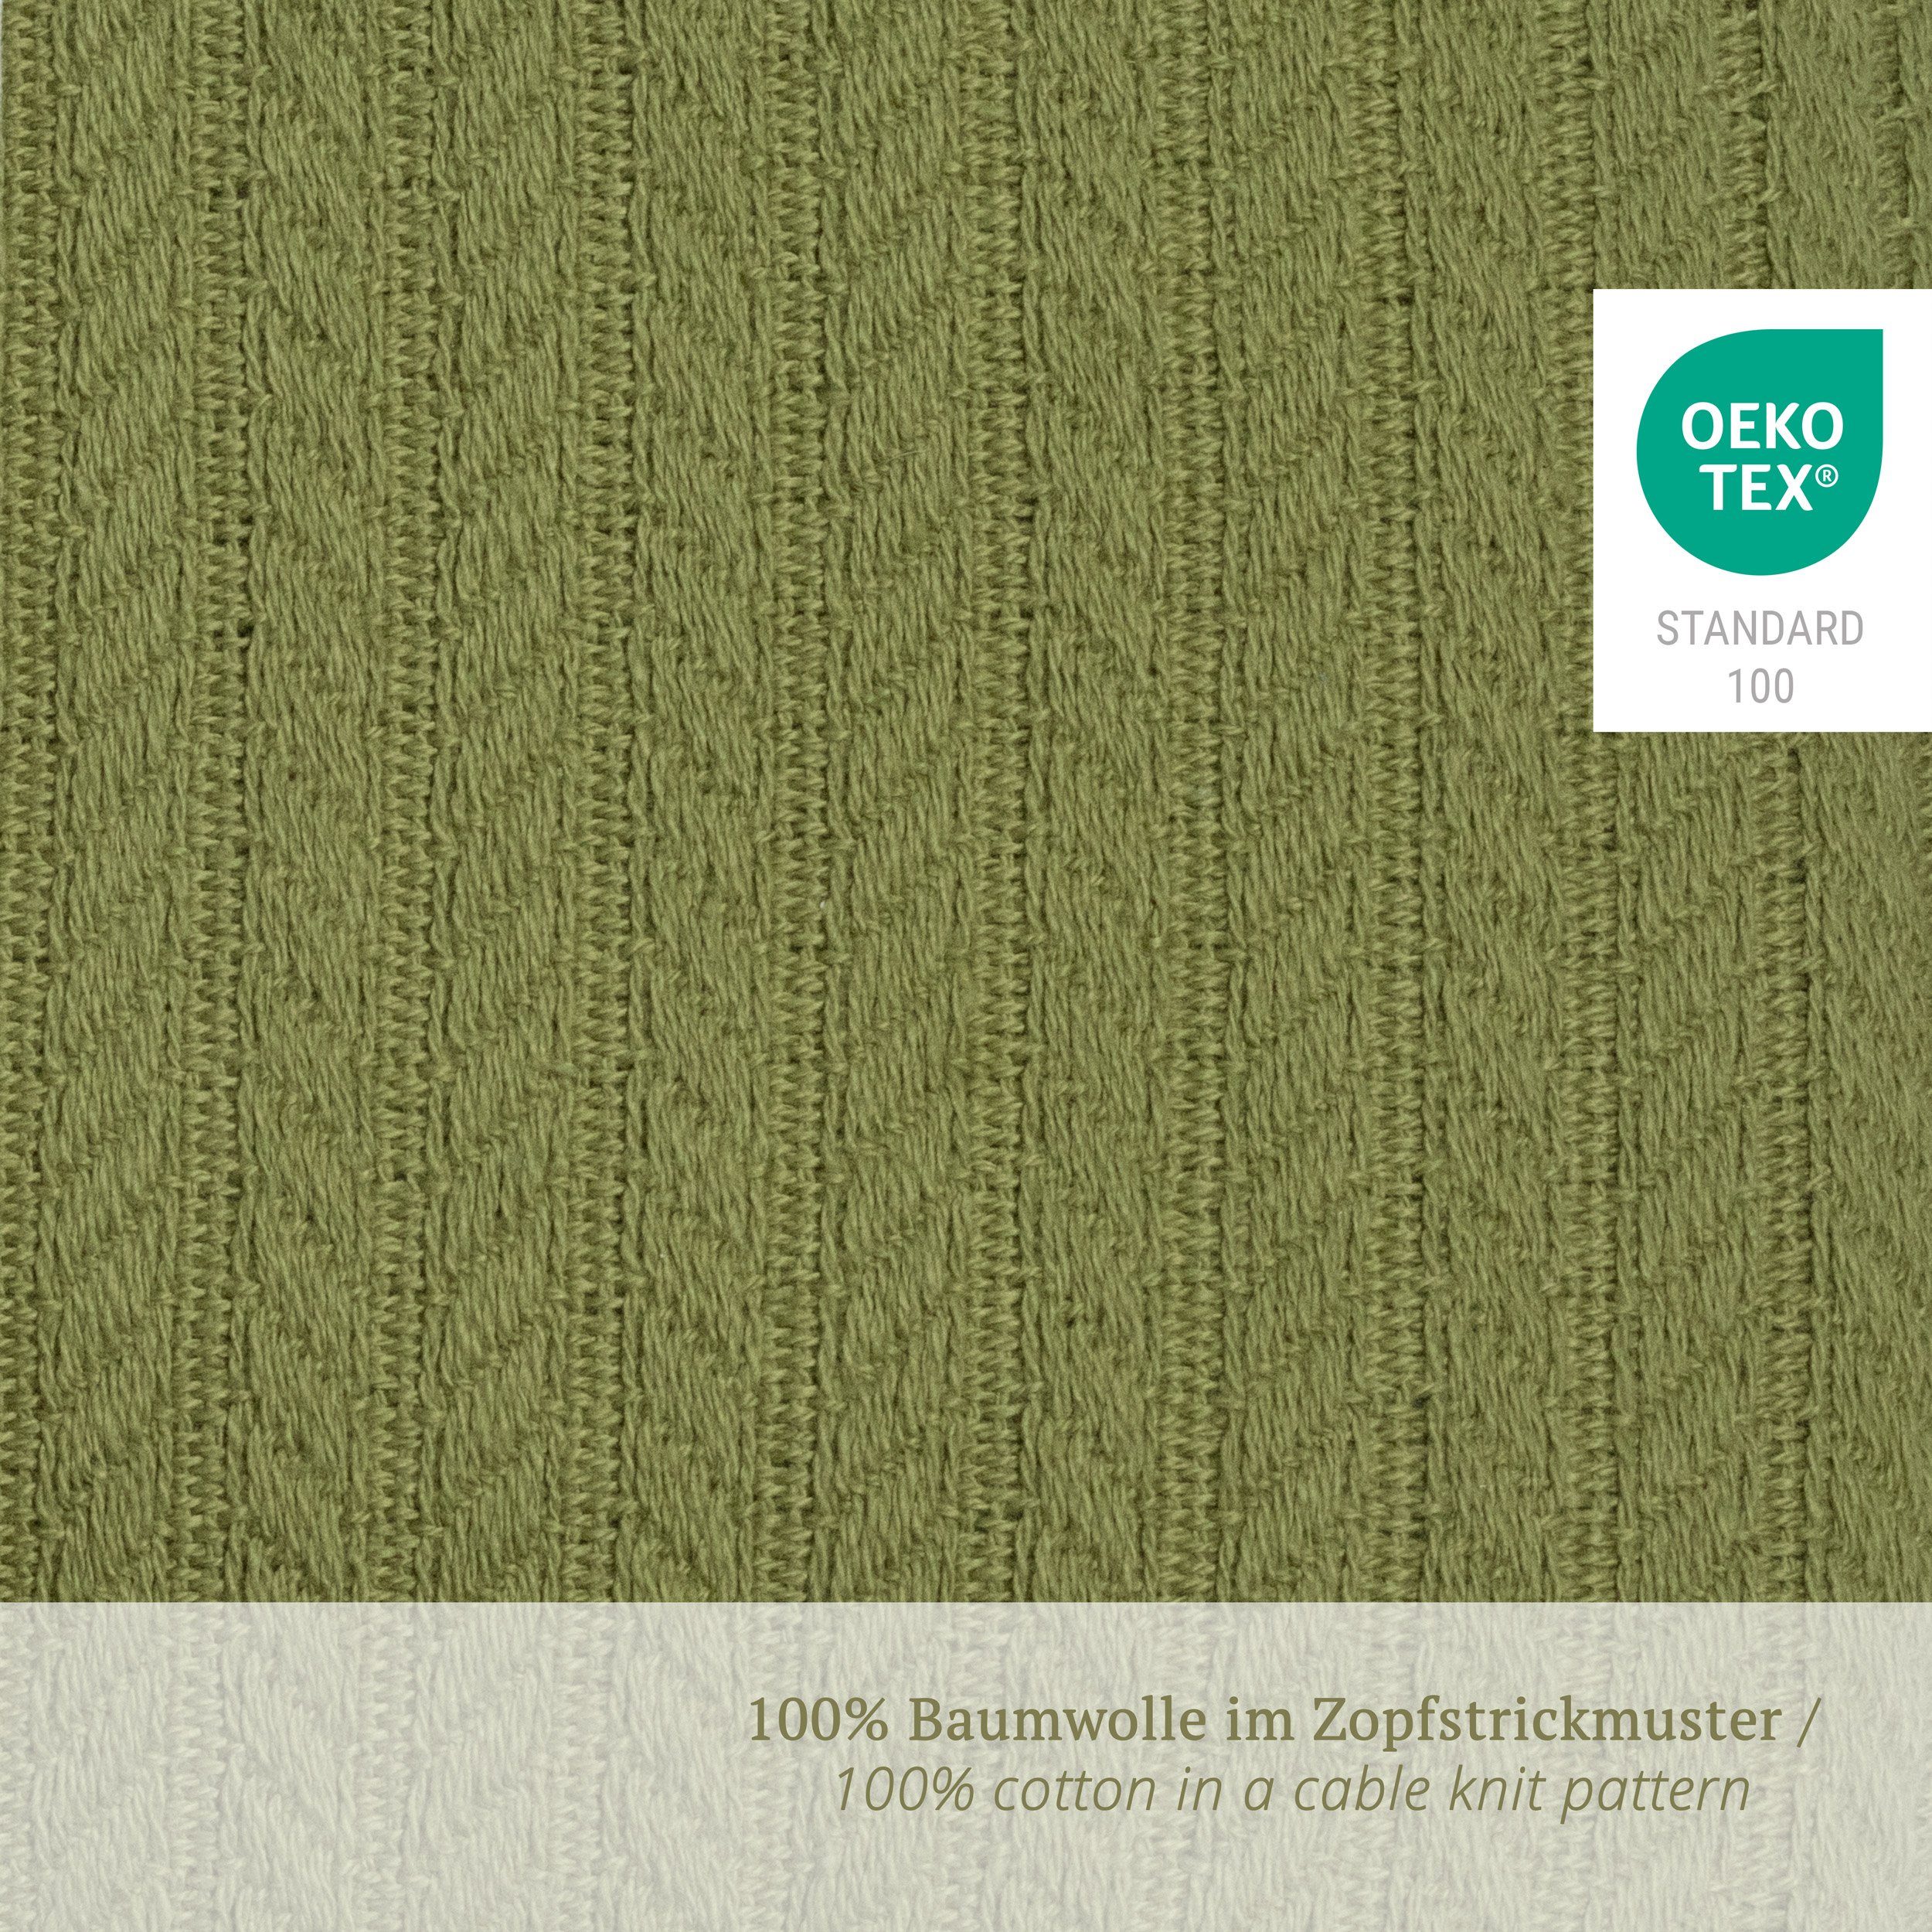 Wickelauflage GmbH in Zopfstrick-Muster Puckdaddy 77x75cm Olive Leah (1x mit Wickelauflage)